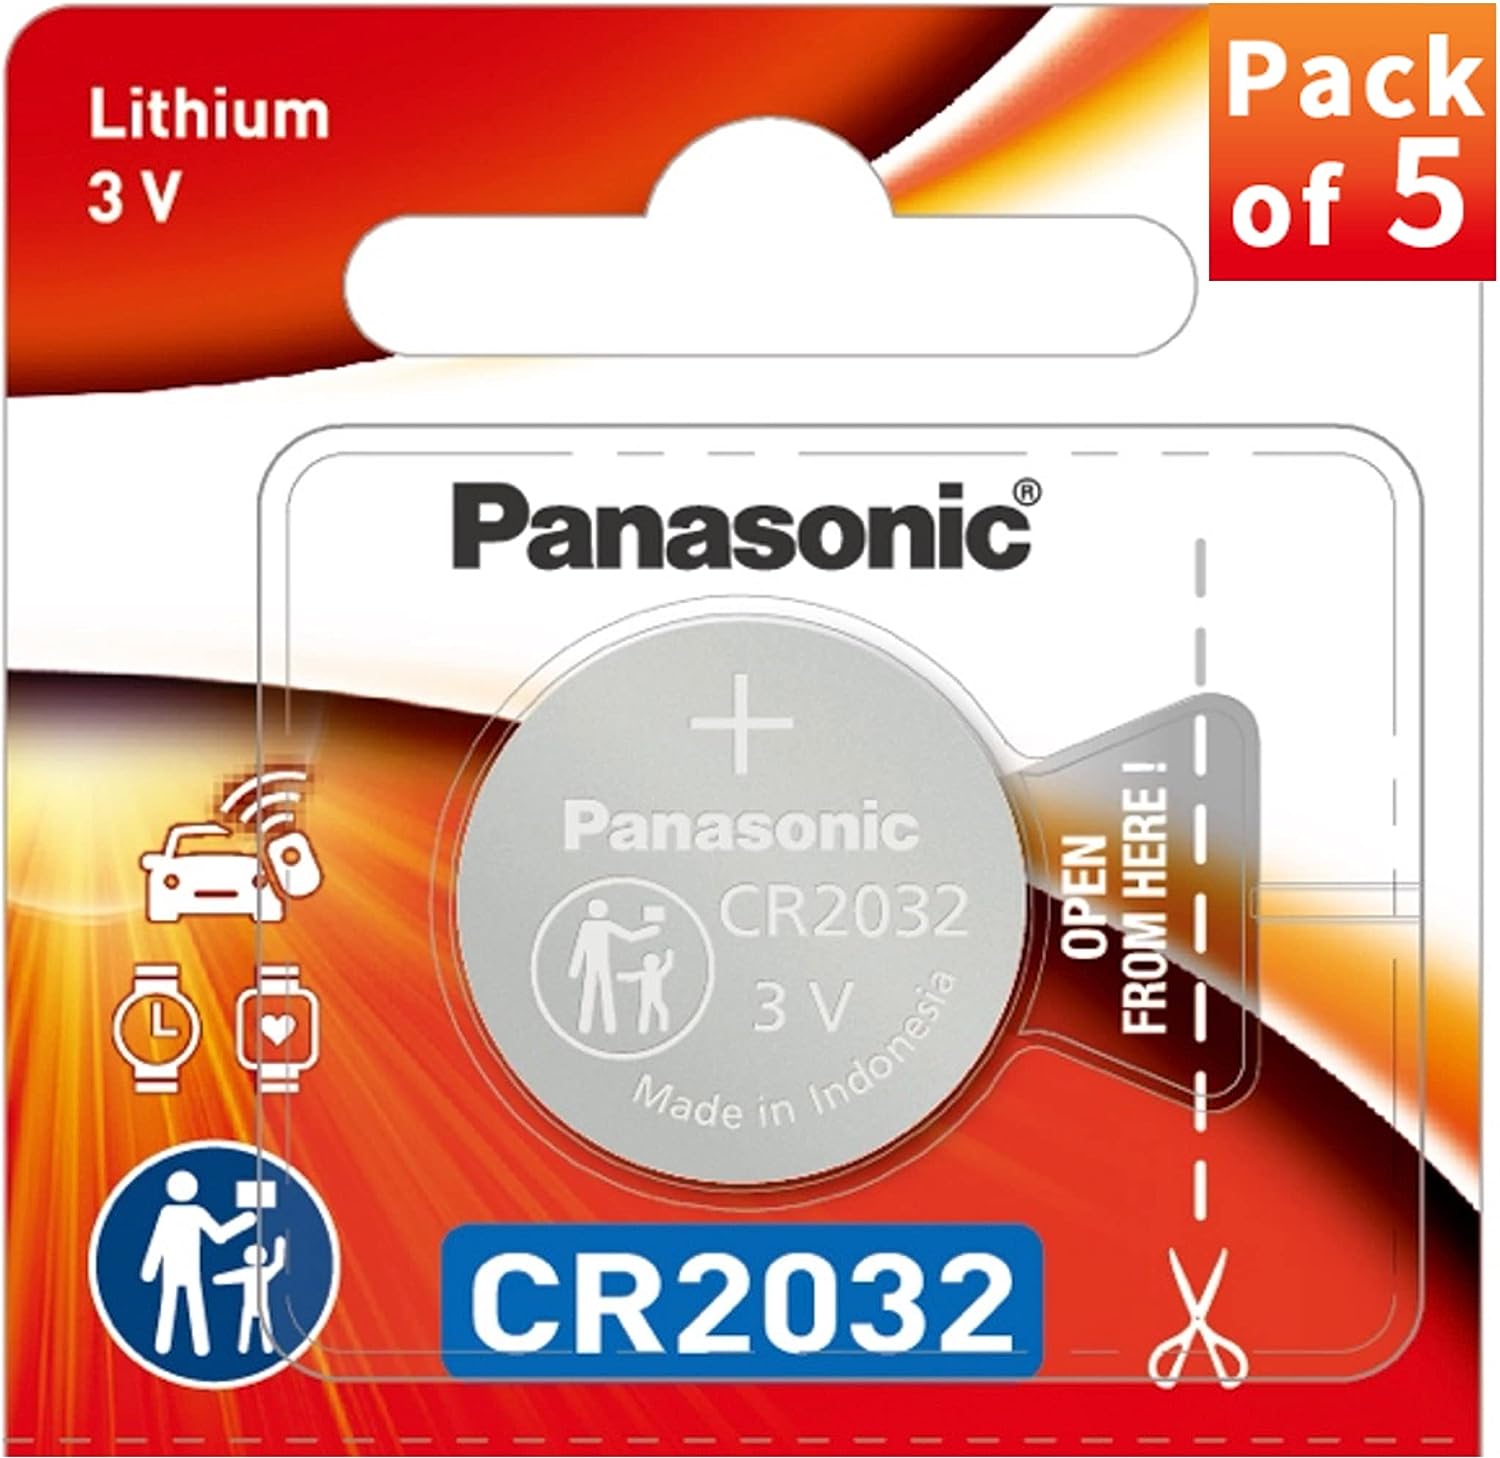 Panasonic Lithium Batteries 3 Volt CR2032 - 5 Pieces